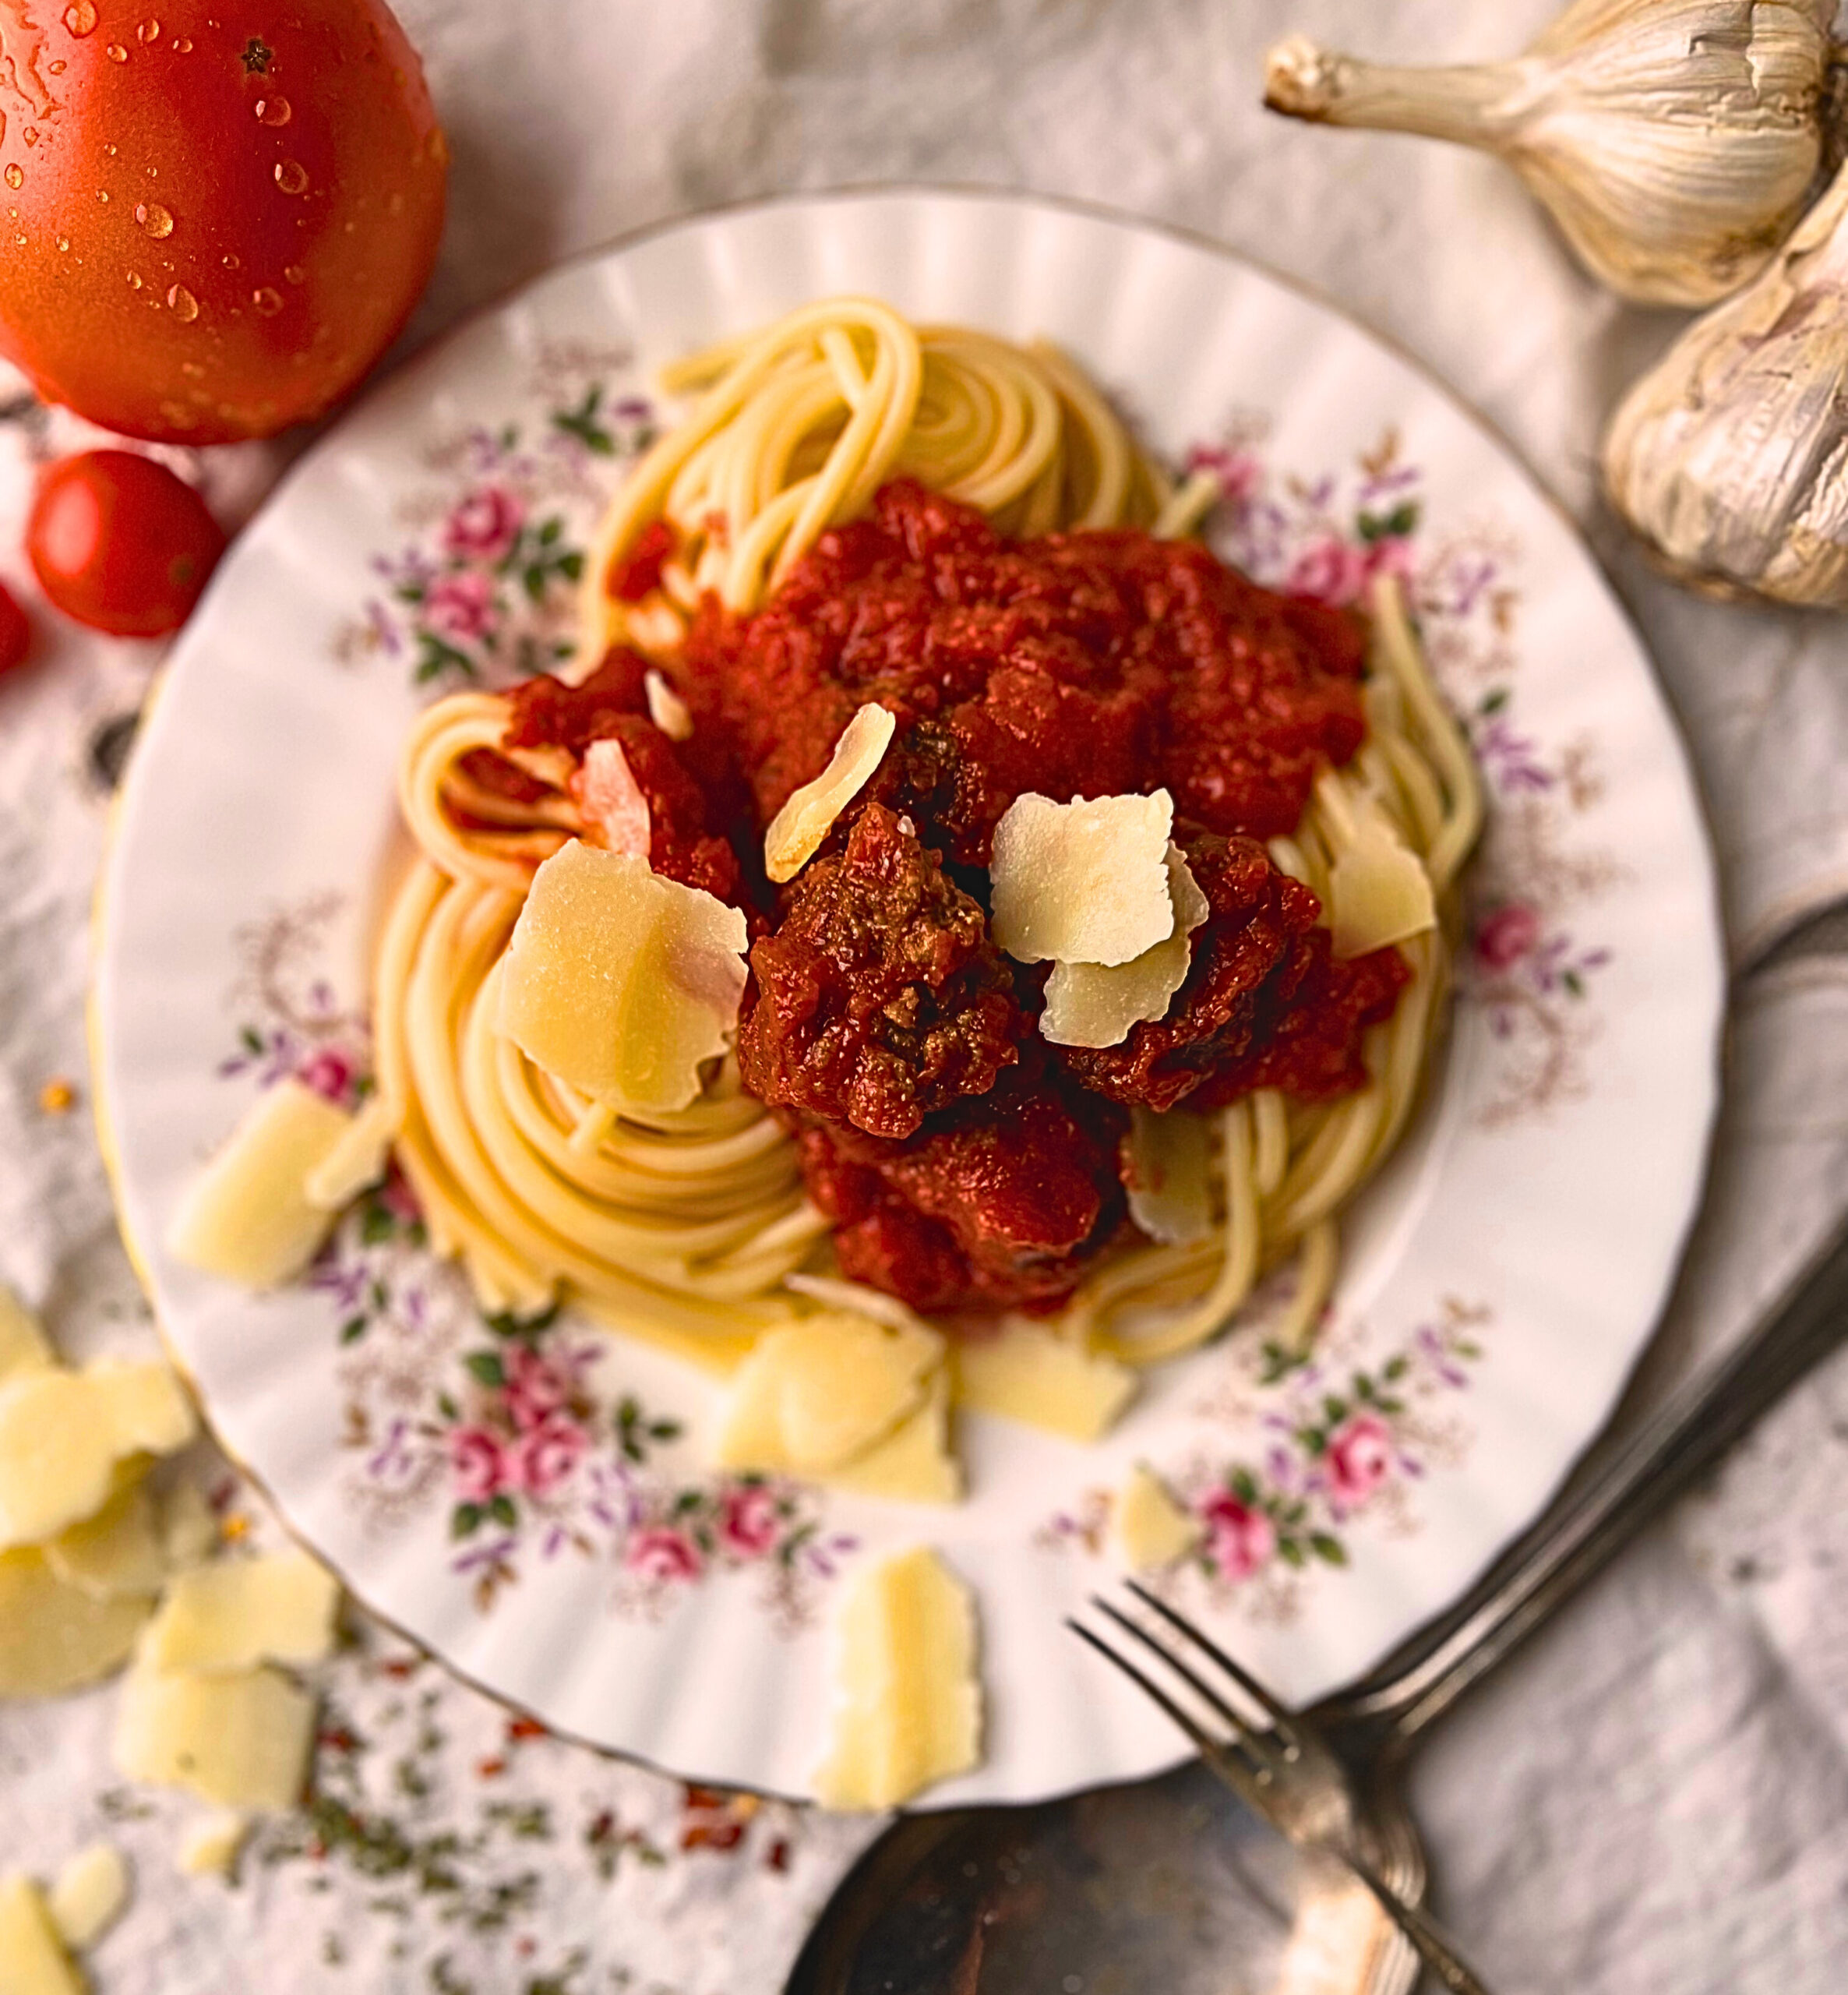 Georgia’s Spiggetta (Spaghetti and Meatballs)